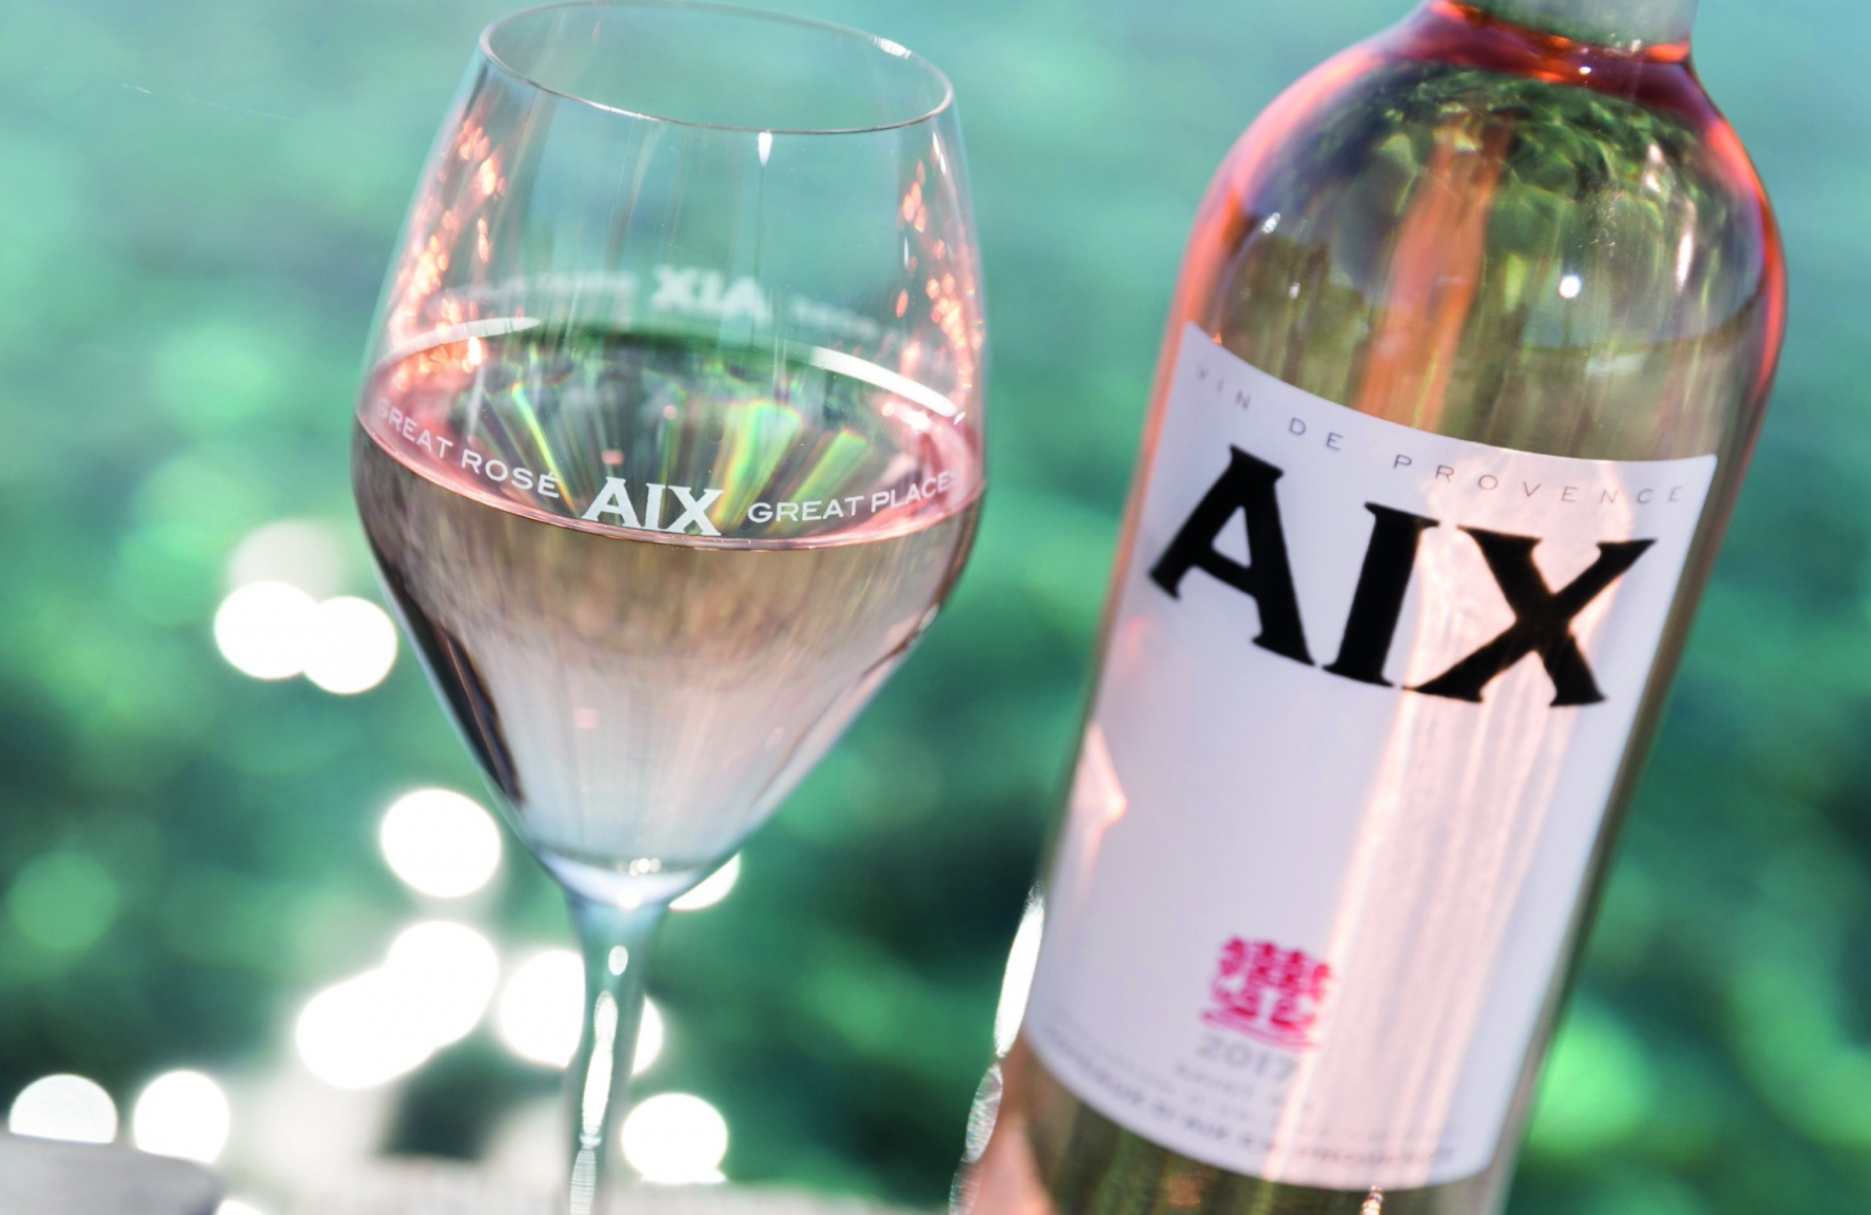 AIX Rose Provence kopen